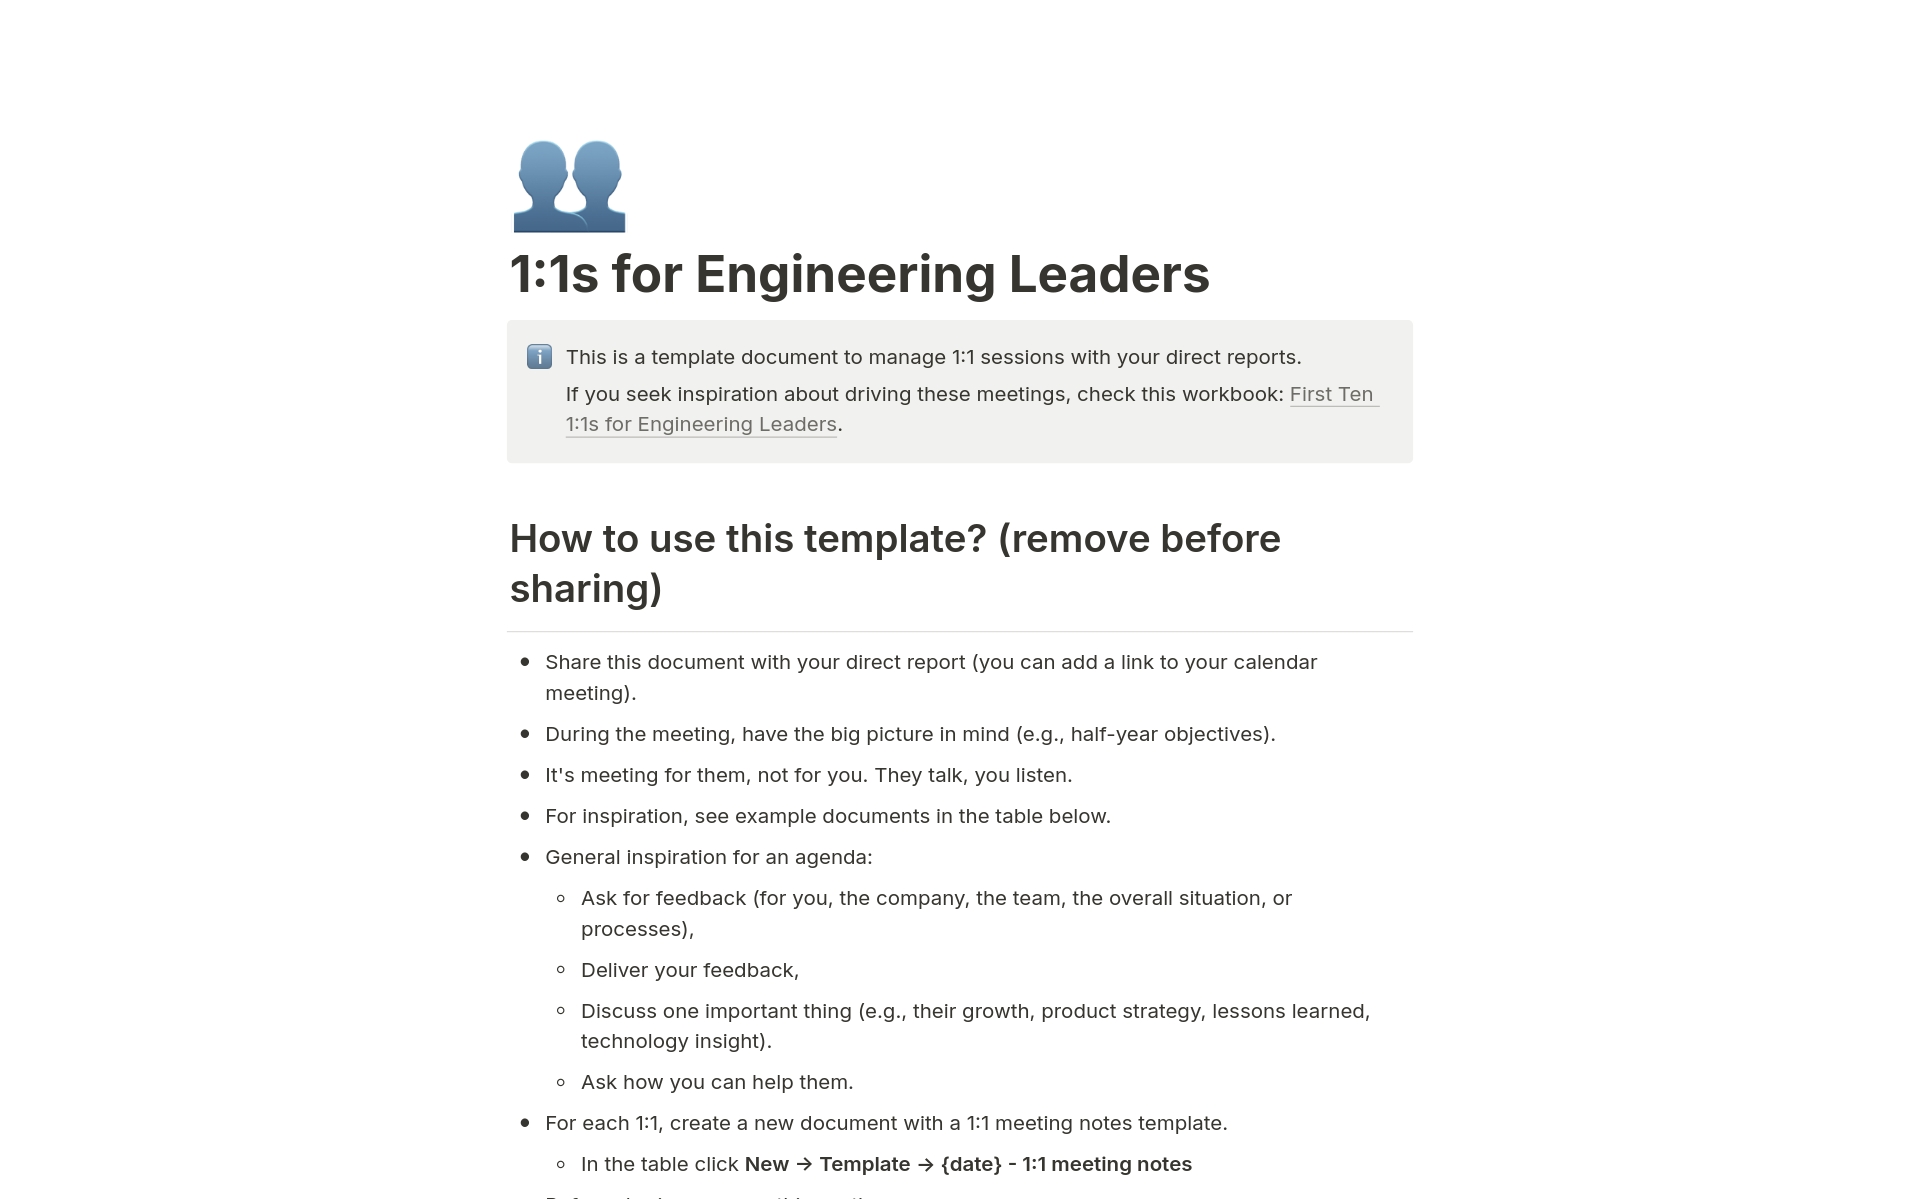 En förhandsgranskning av mallen för 1:1s for Engineering Leaders